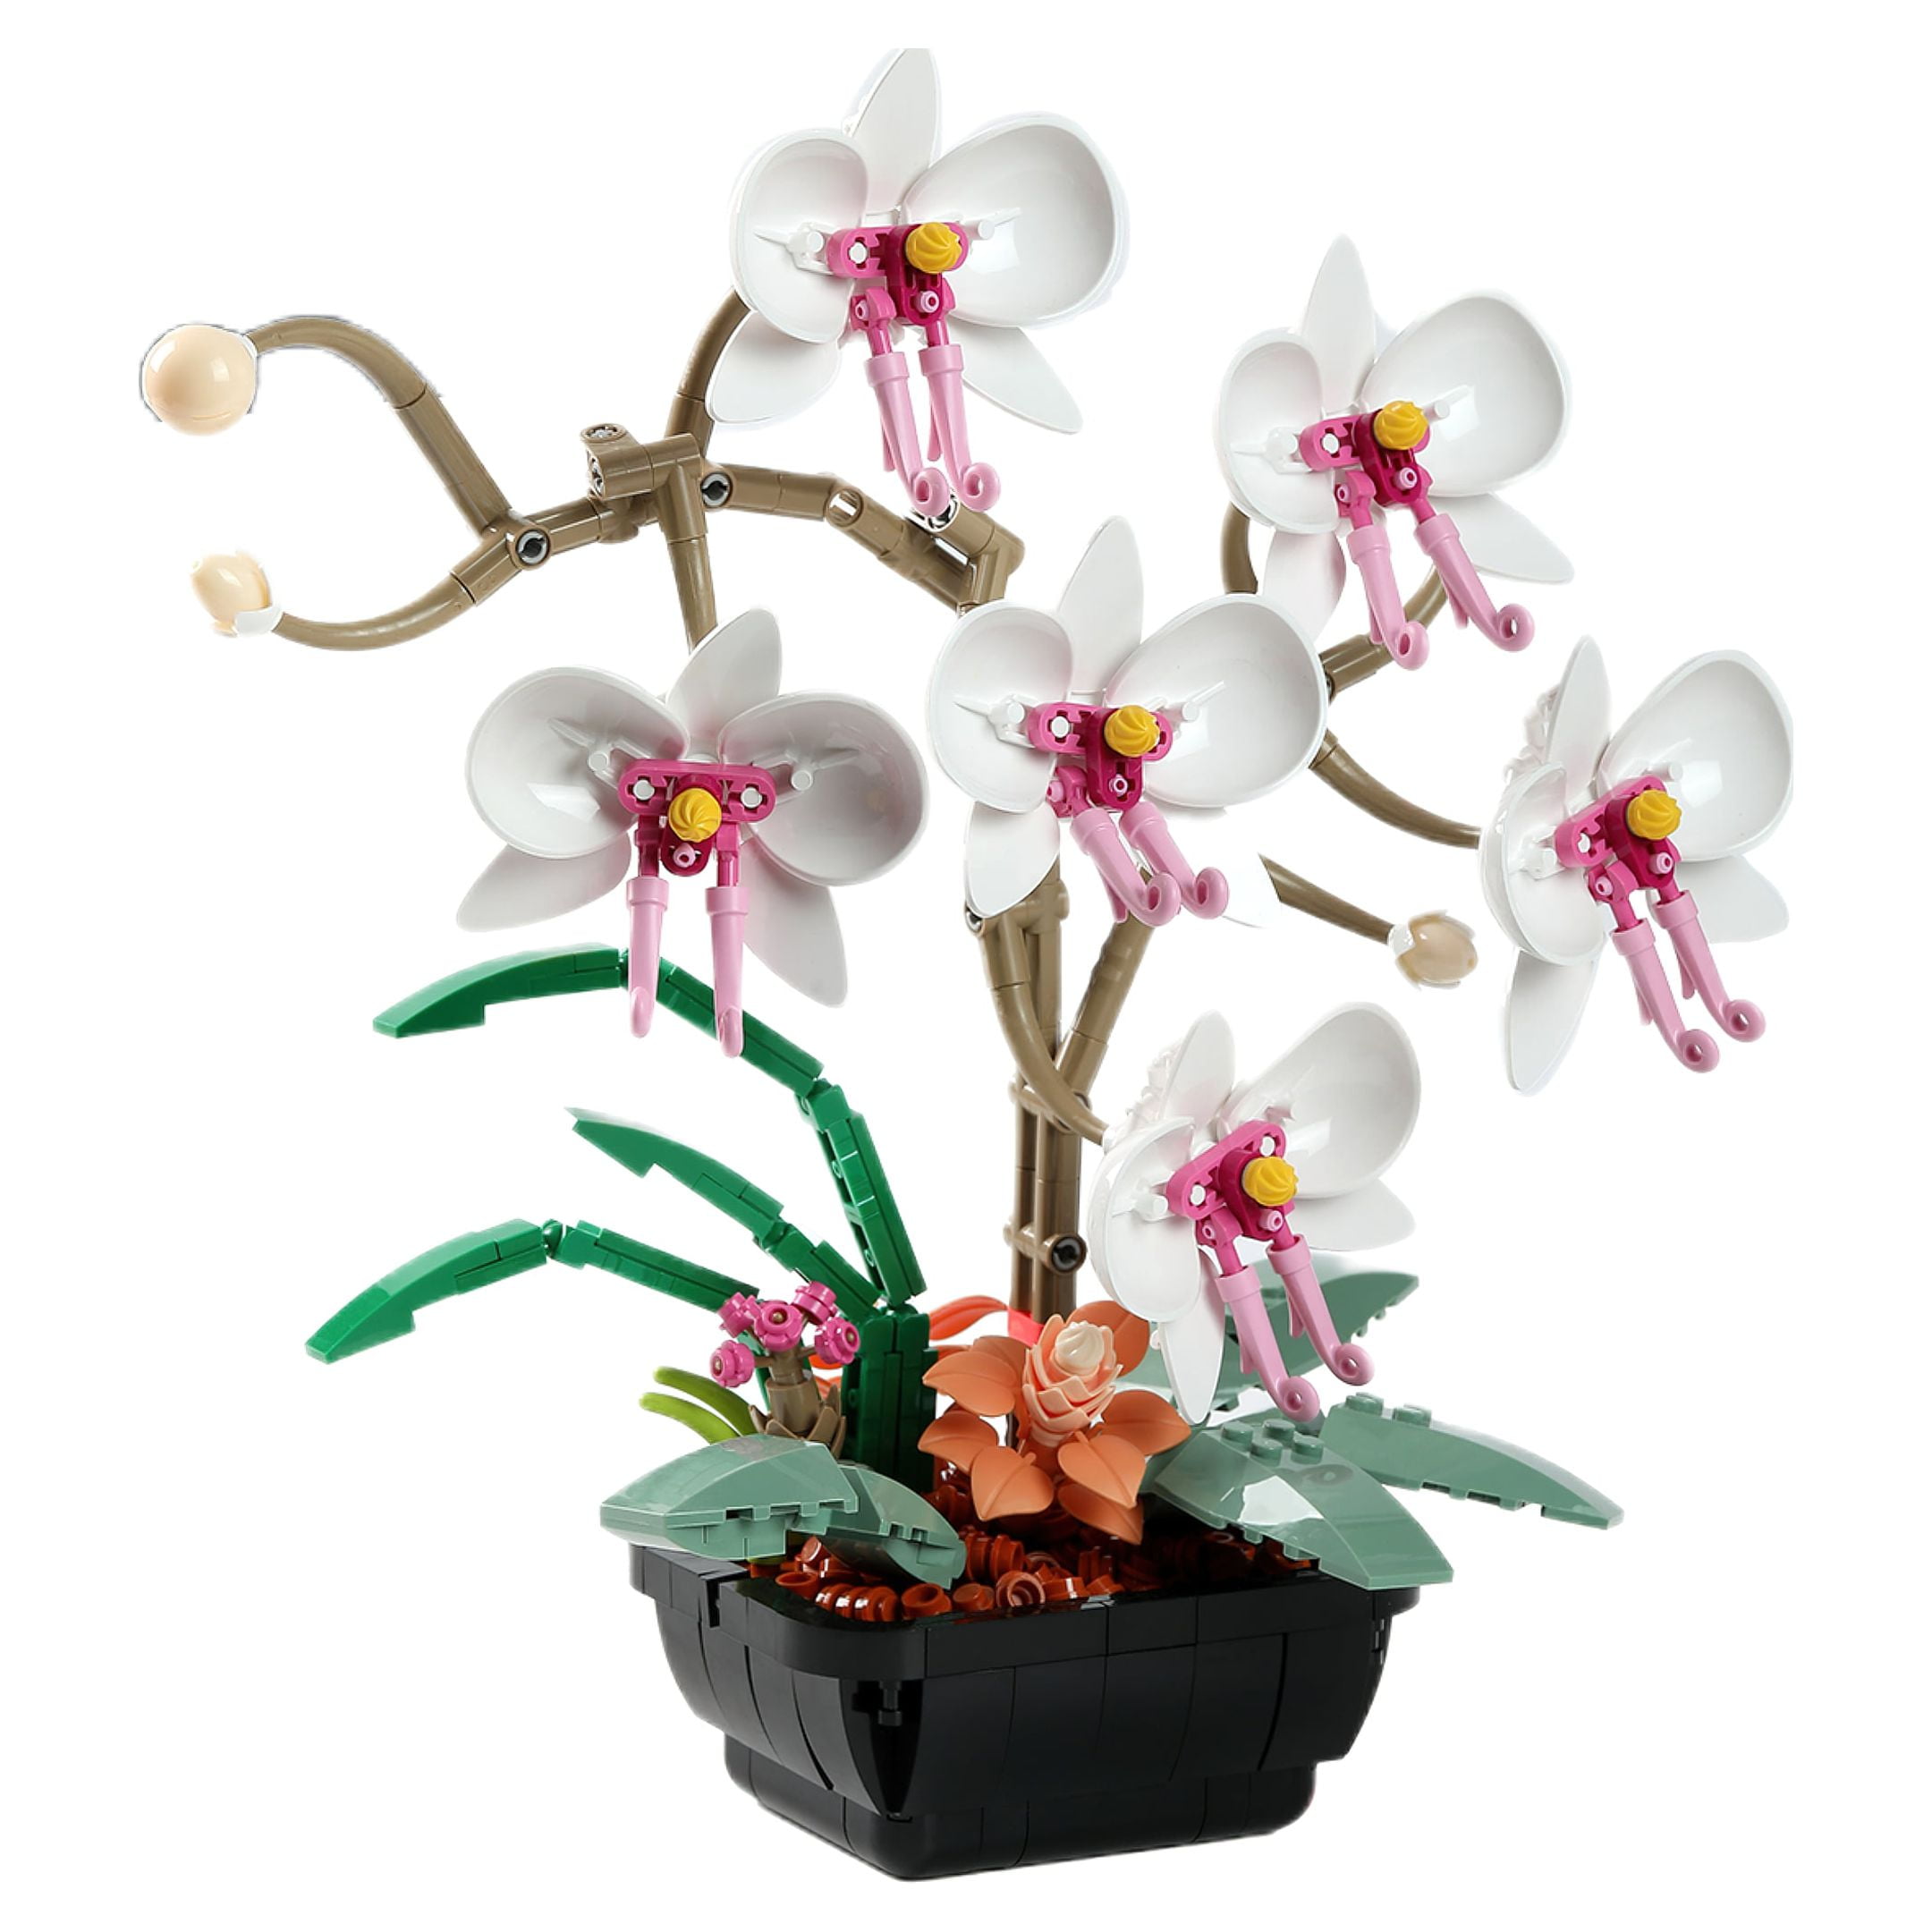 HI-Reeke Building Block Set Flower Botanical Bonsai Collection Kit ...